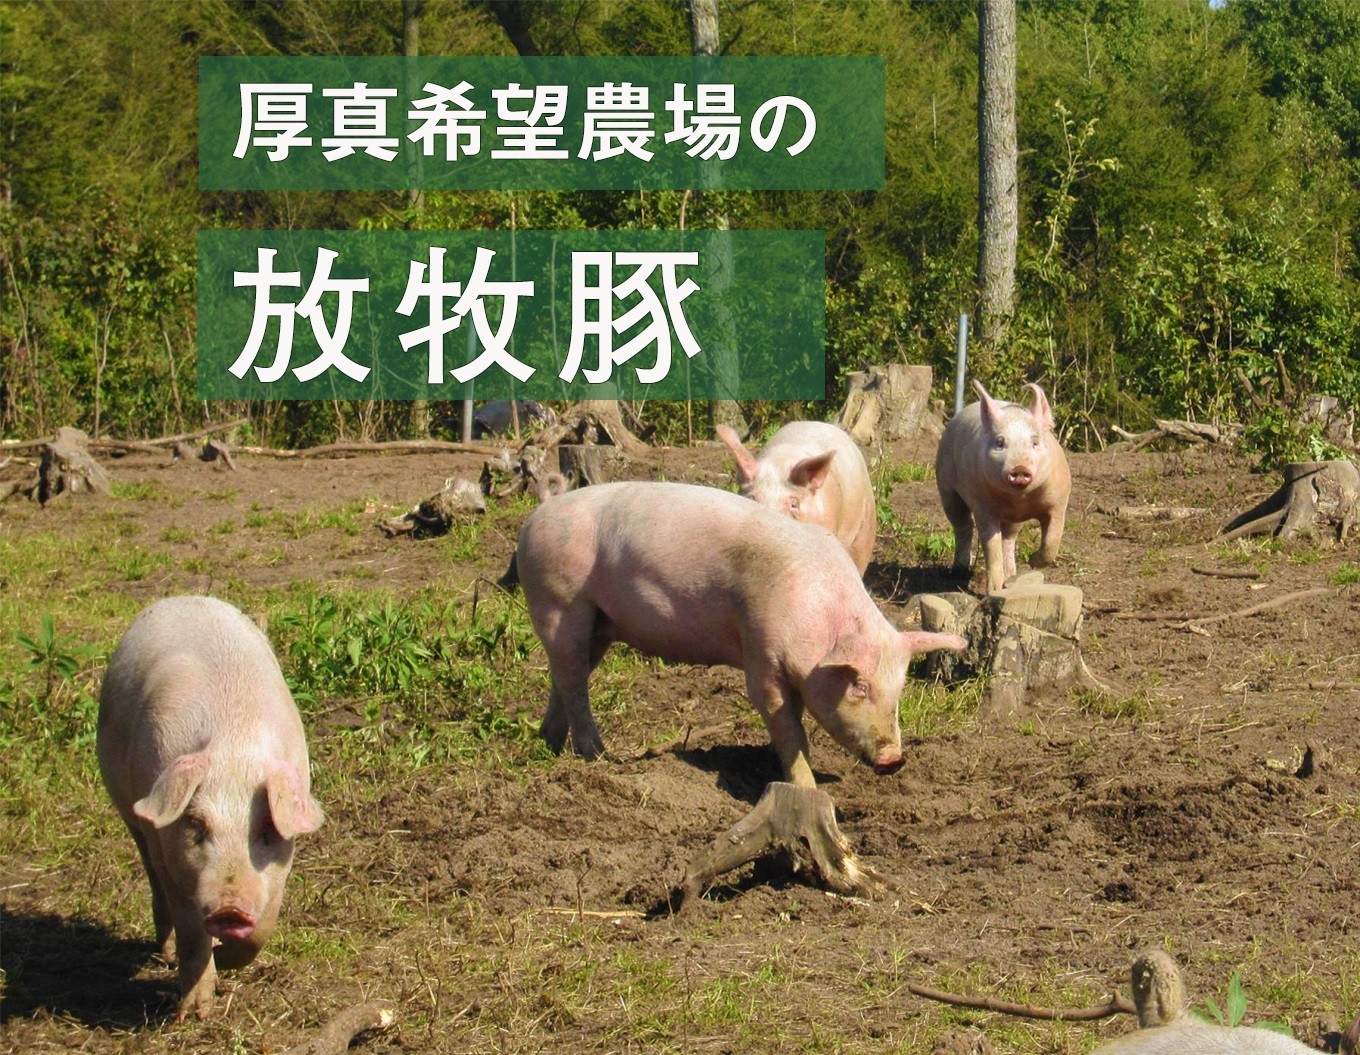 厚真希望農場で育った放牧豚の無添加ソーセージセット - 北海道厚真町 | ふるさと納税 [ふるさとチョイス]